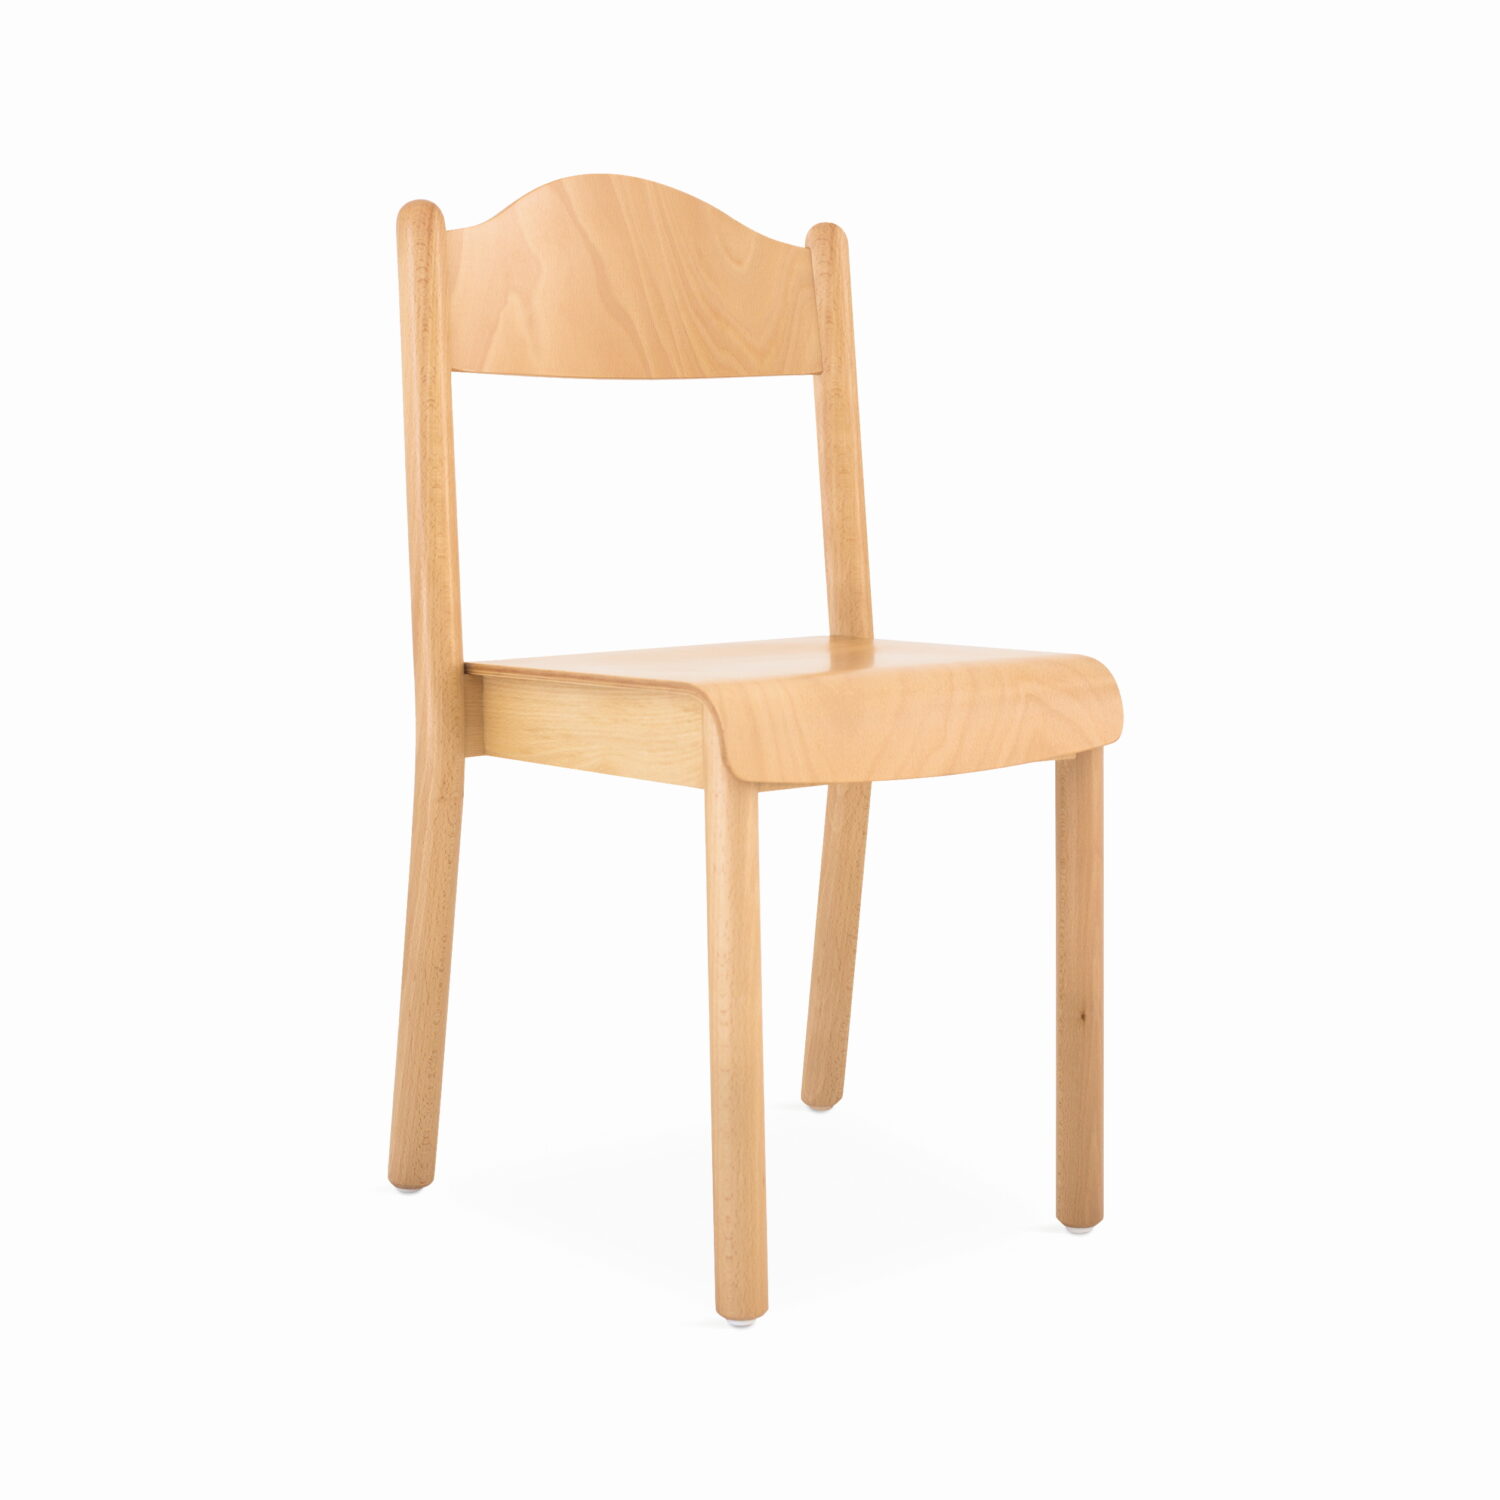 Spazio 97 art. 572l sedia adulti legno faggio after sedia massello